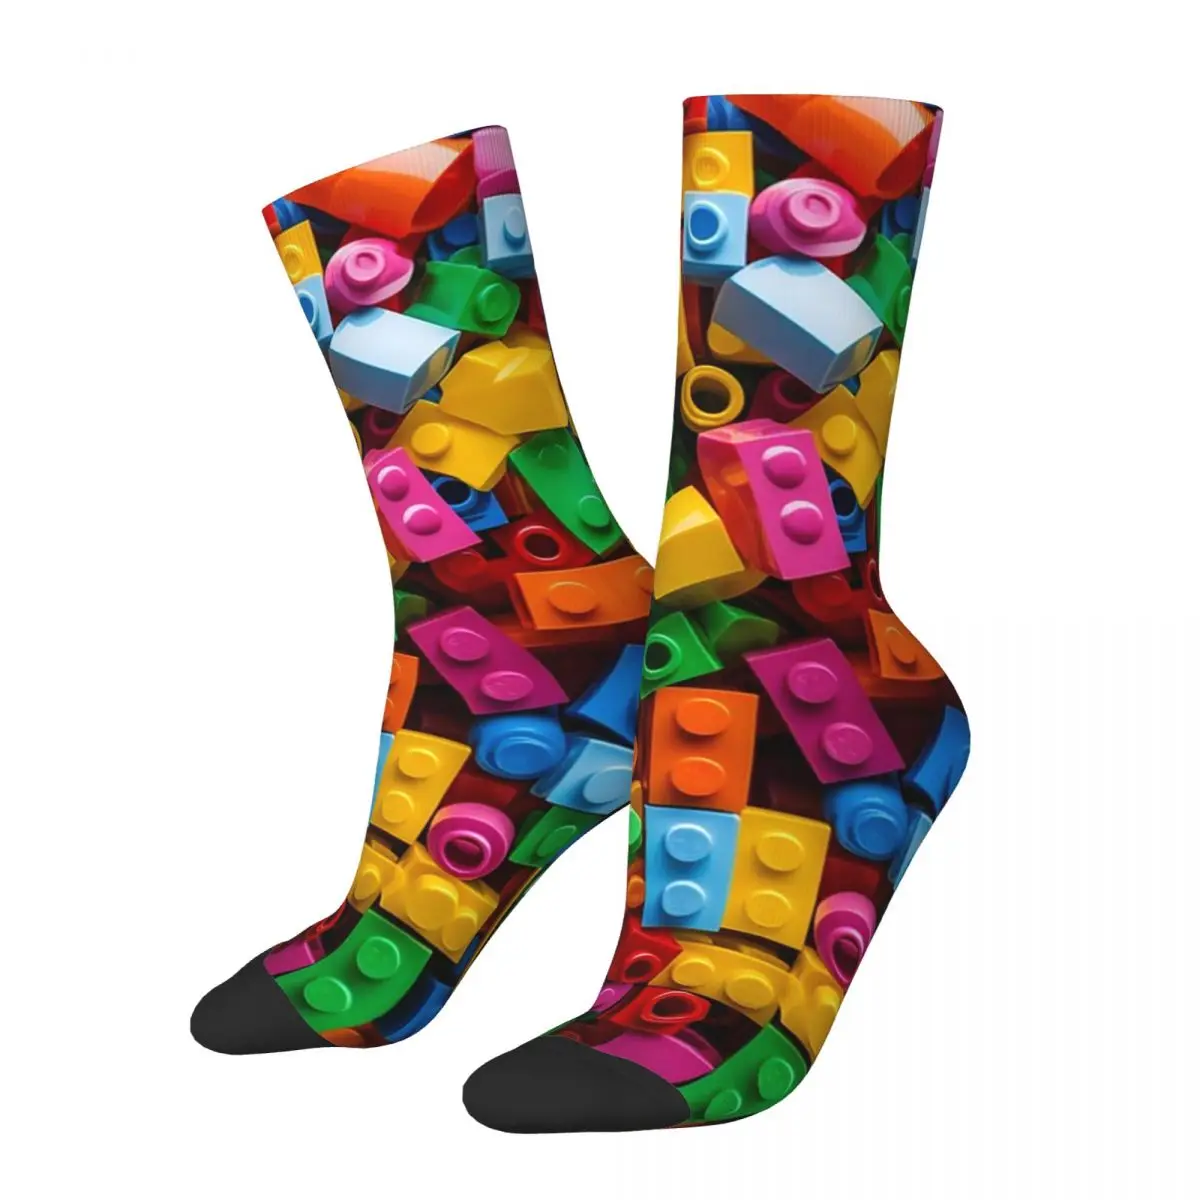 

Носки Lego текстурные 2 шт., Супермягкие чулки в стиле Харадзюку, всесезонные длинные, аксессуары для мужчин и женщин, подарок на день рождения